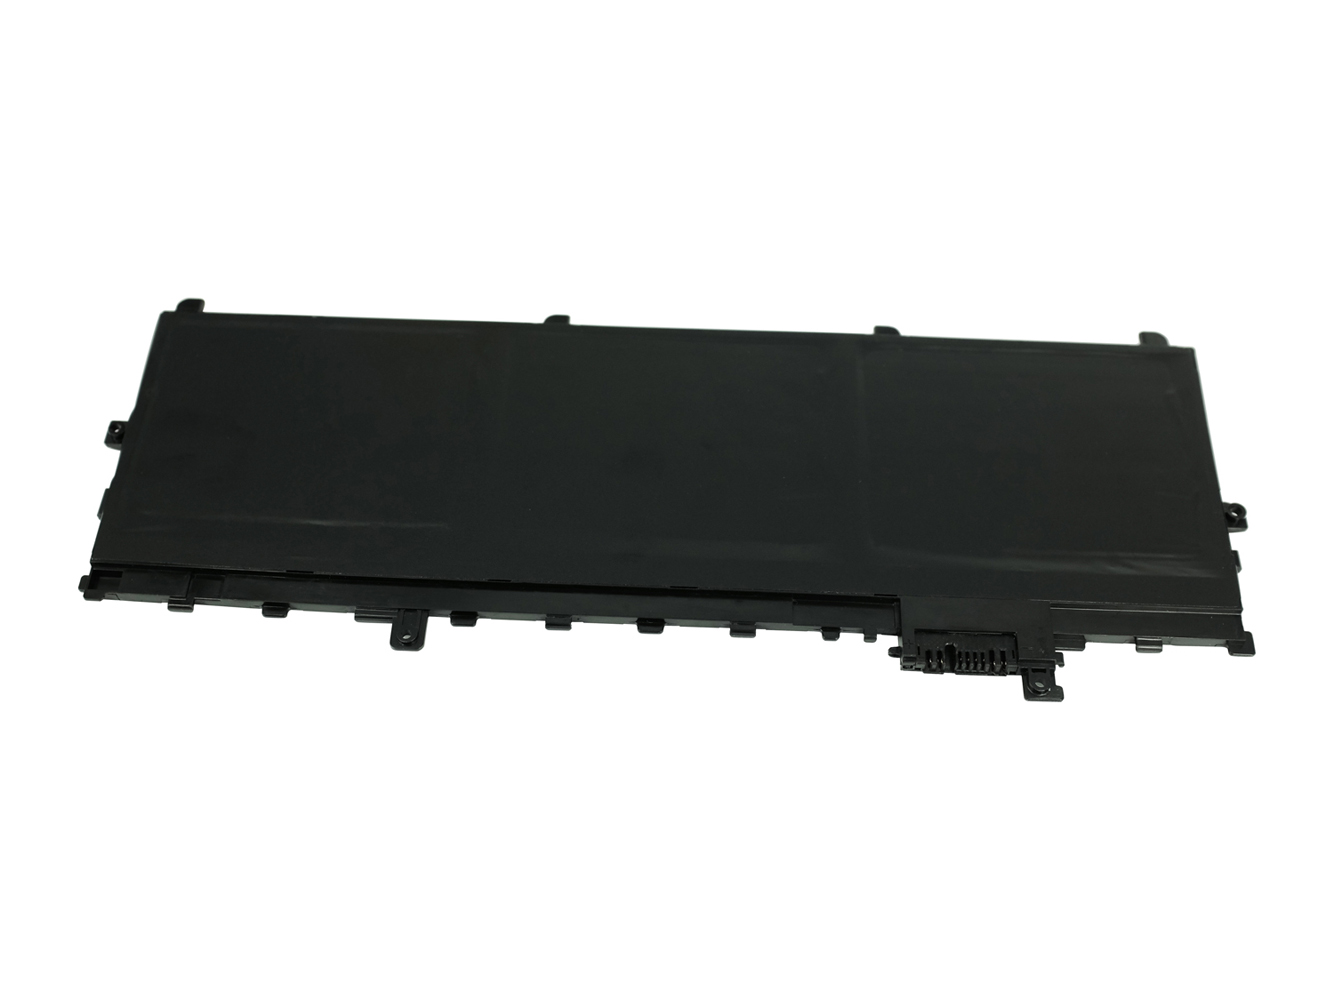 01AV430, 01AV494 replacement Laptop Battery for Lenovo 01AV430, 01AV494, 11.58V